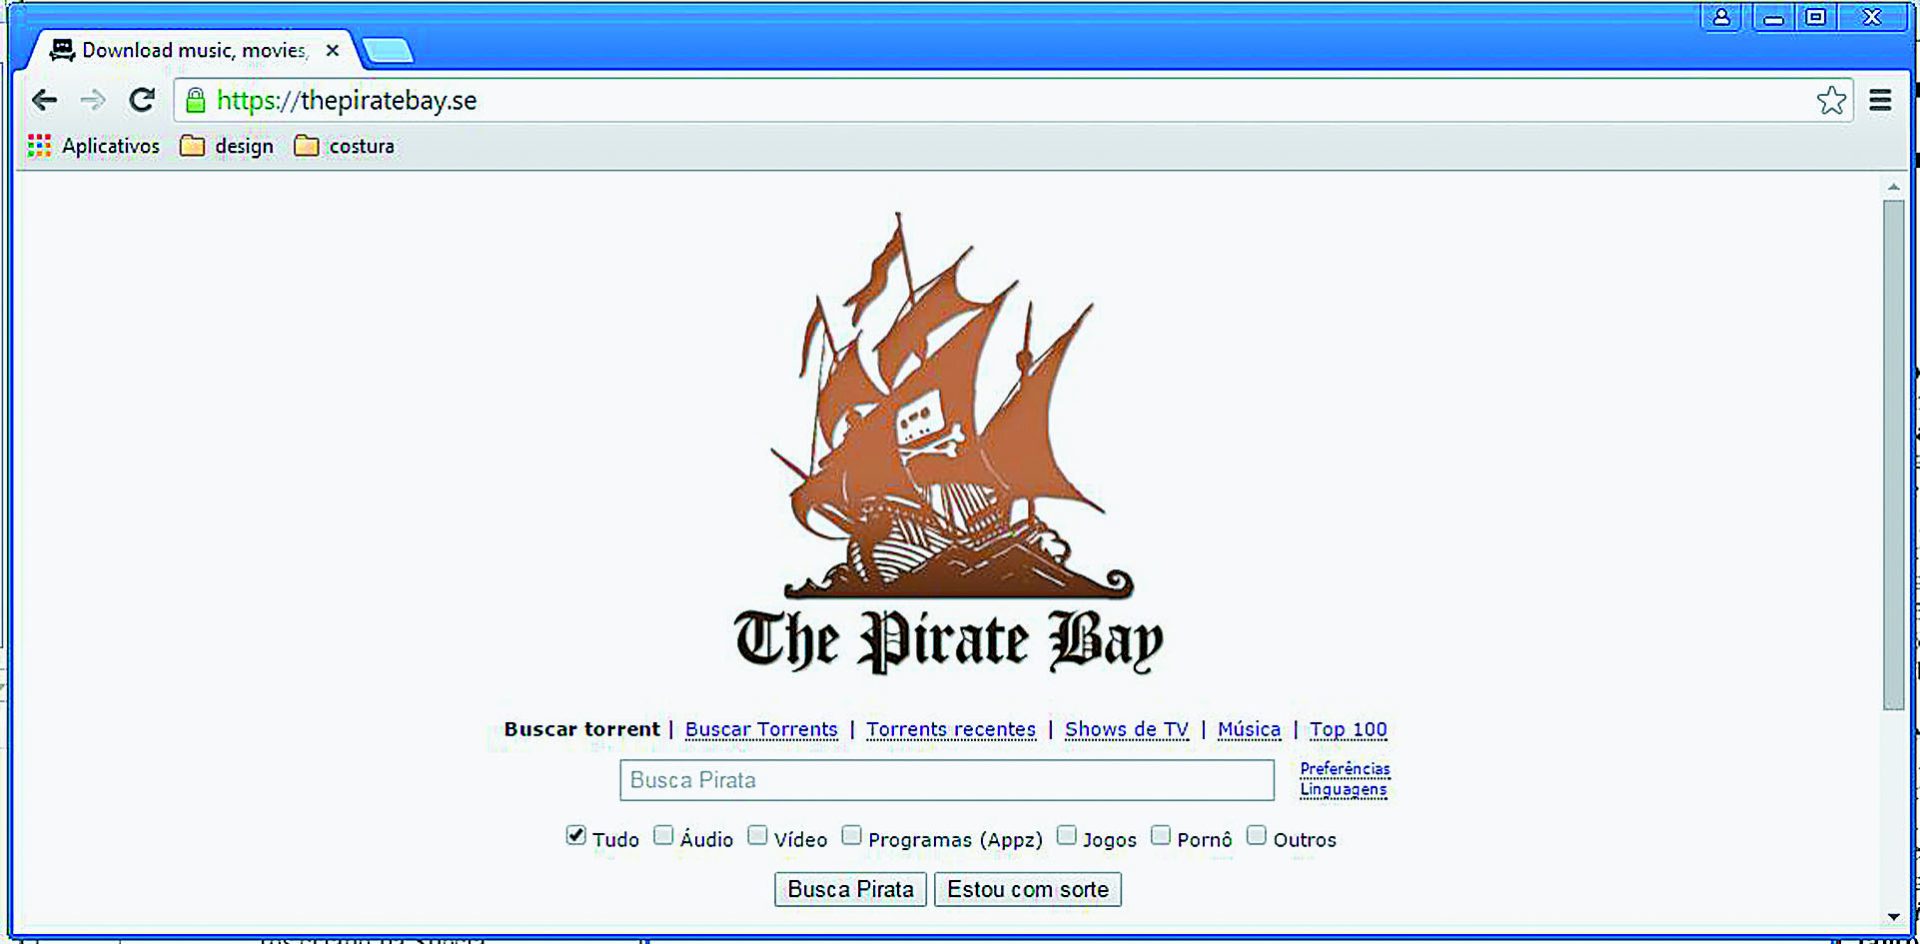 Bloqueio ao Pirate Bay